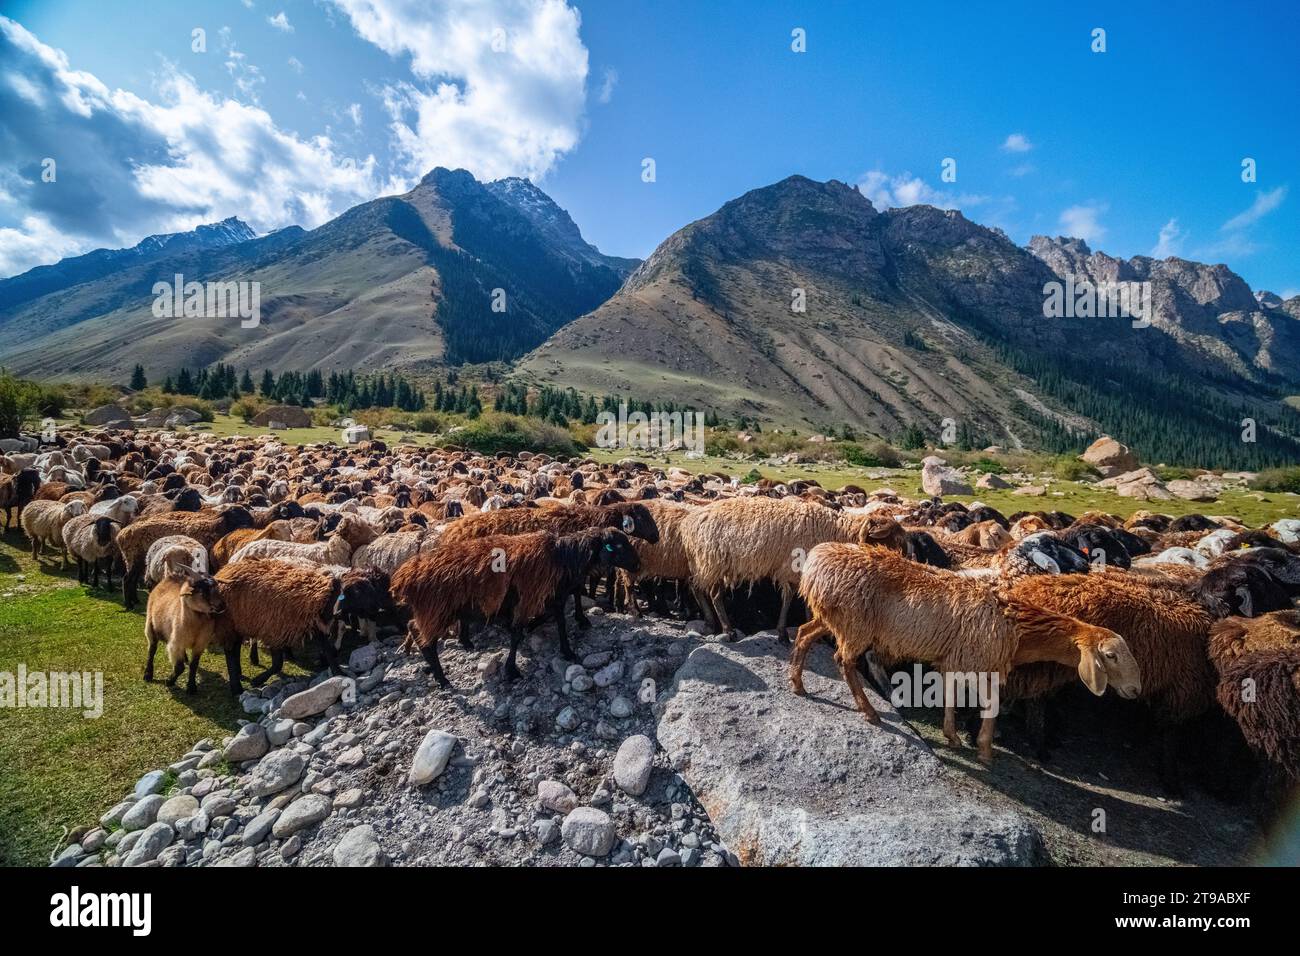 Shepherd on horseback guiding a flock of sheep in the mountain range Kyrgyzstan Stock Photo